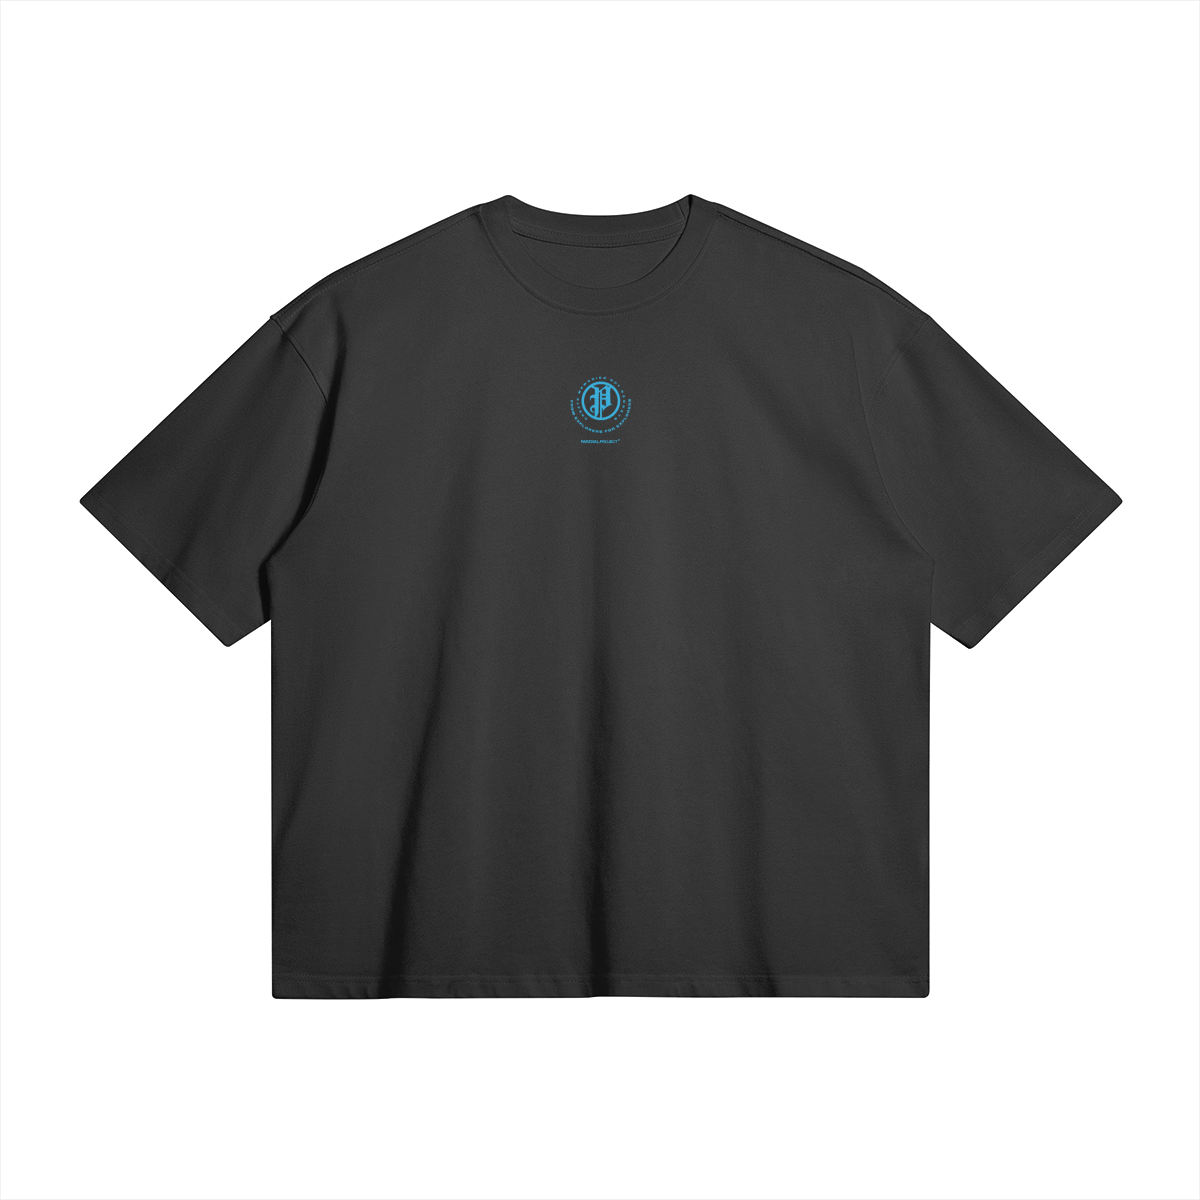 explorer shirt - light blue logo